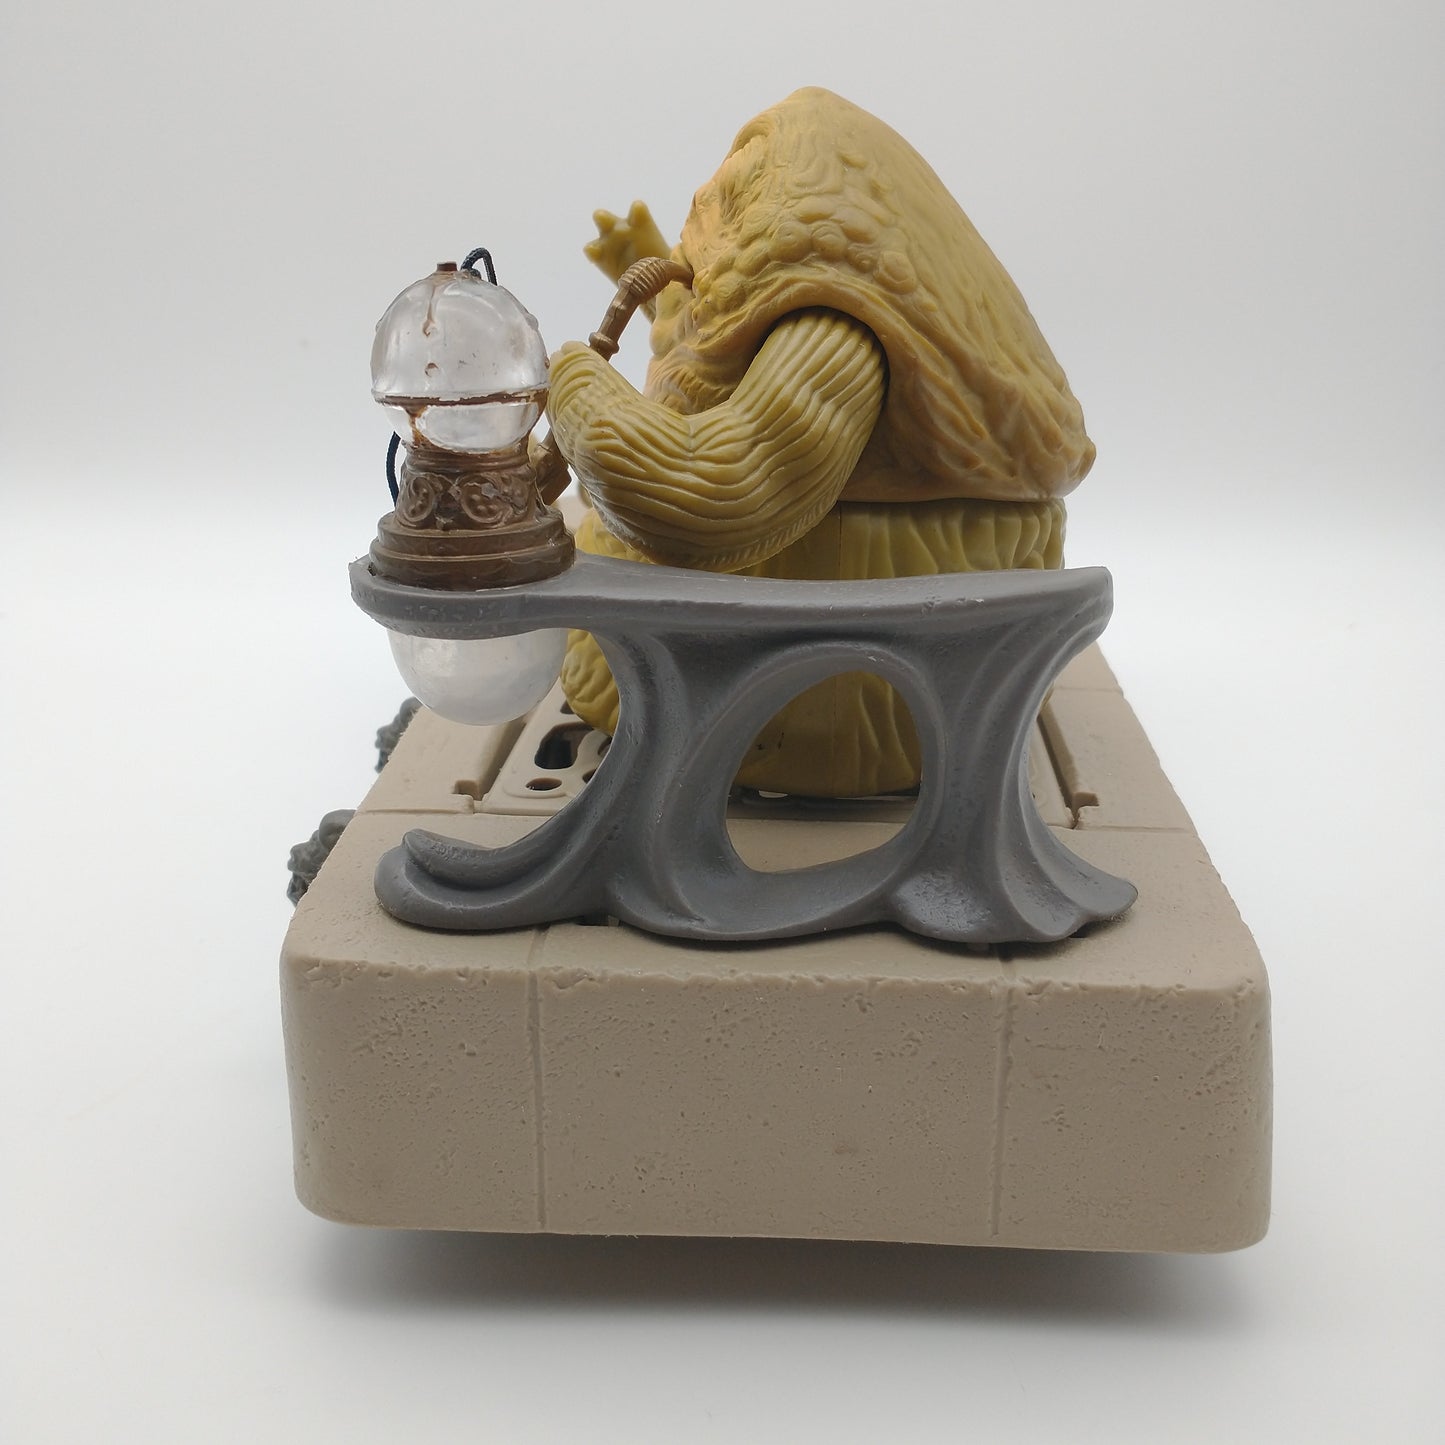 Star Wars Jabba The Hutt W/Salacious Crumb 1984 Loose, 100% Complete